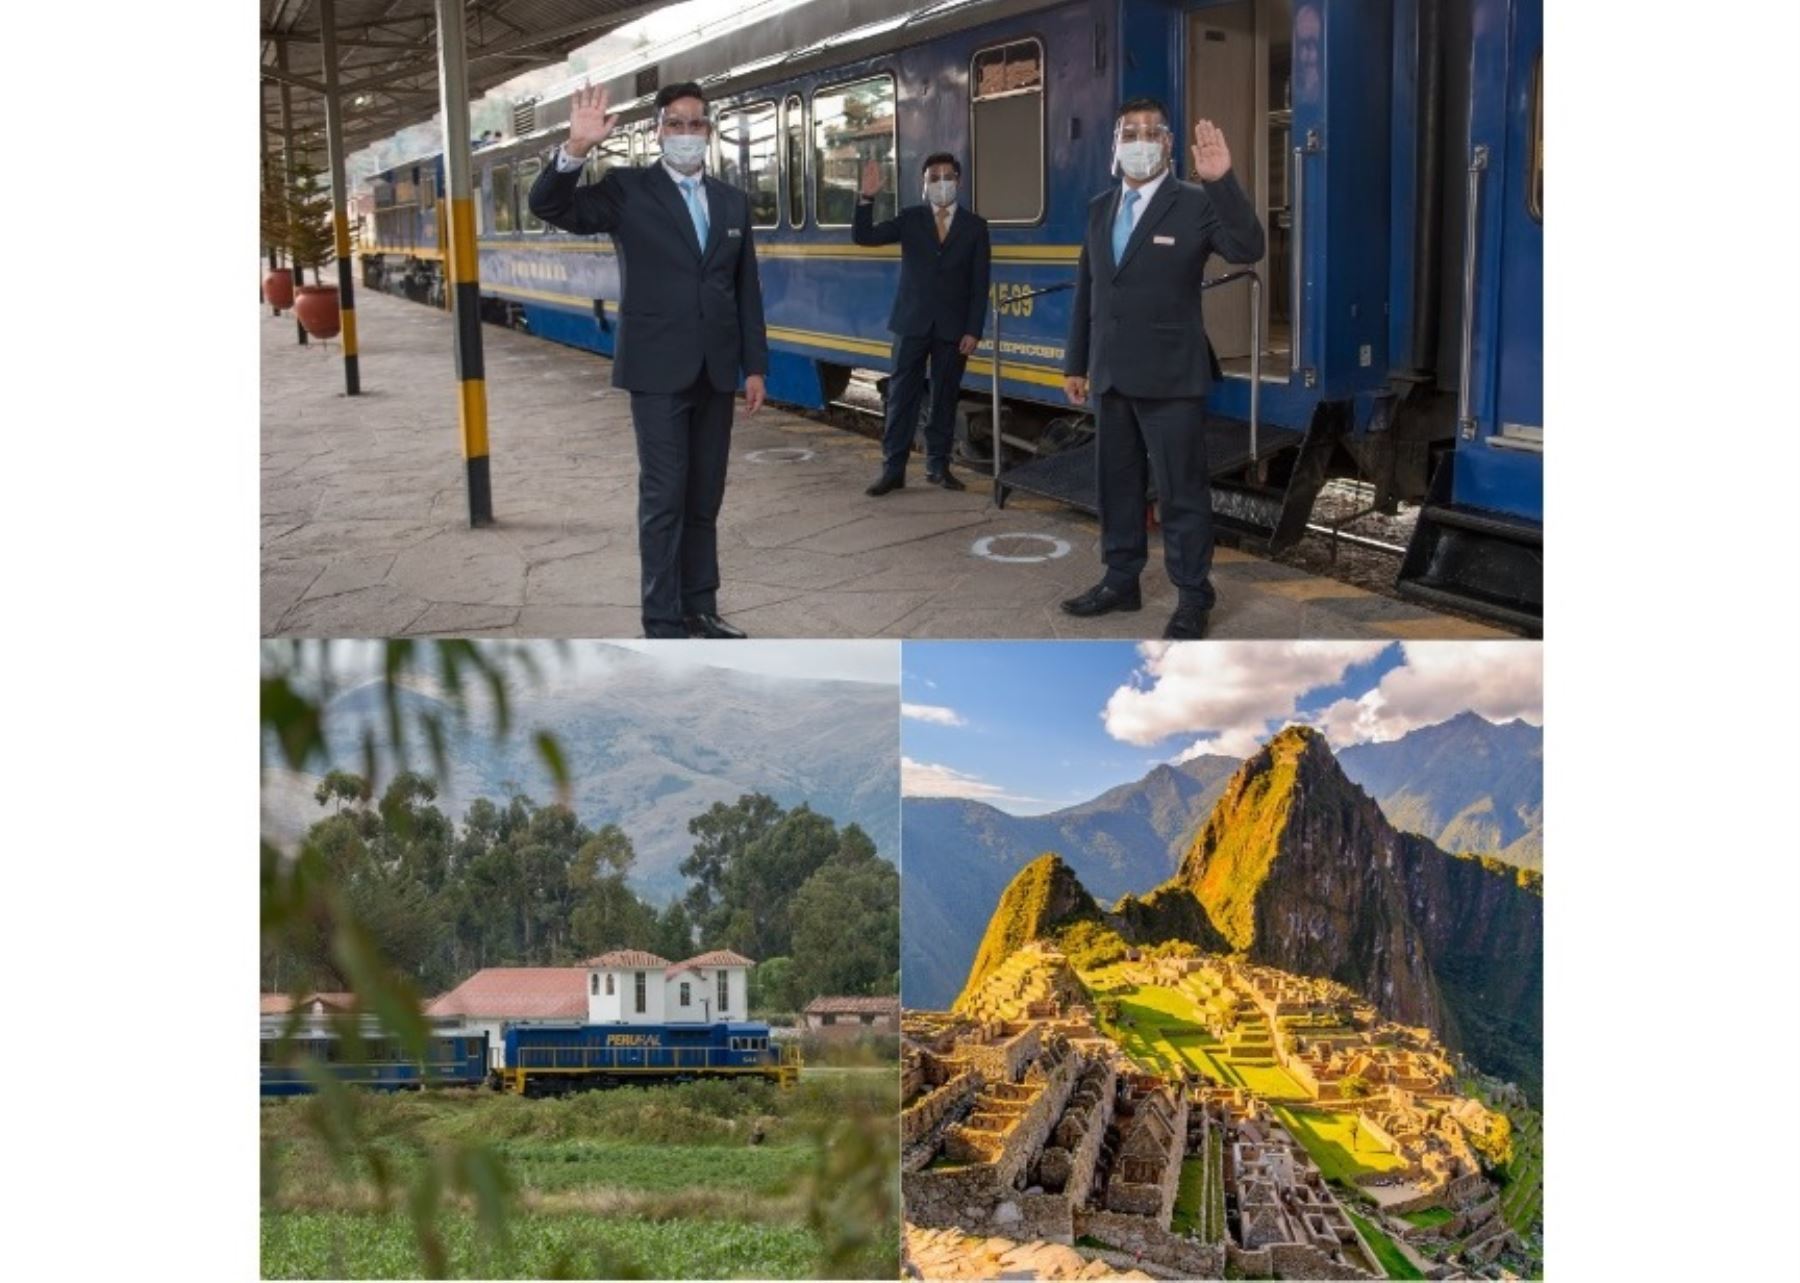 La operadora PeruRail anunció el reinicio de operaciones turísticas del tren a Machu Picchu a partir del 1 de noviembre. ANDINA/Difusión